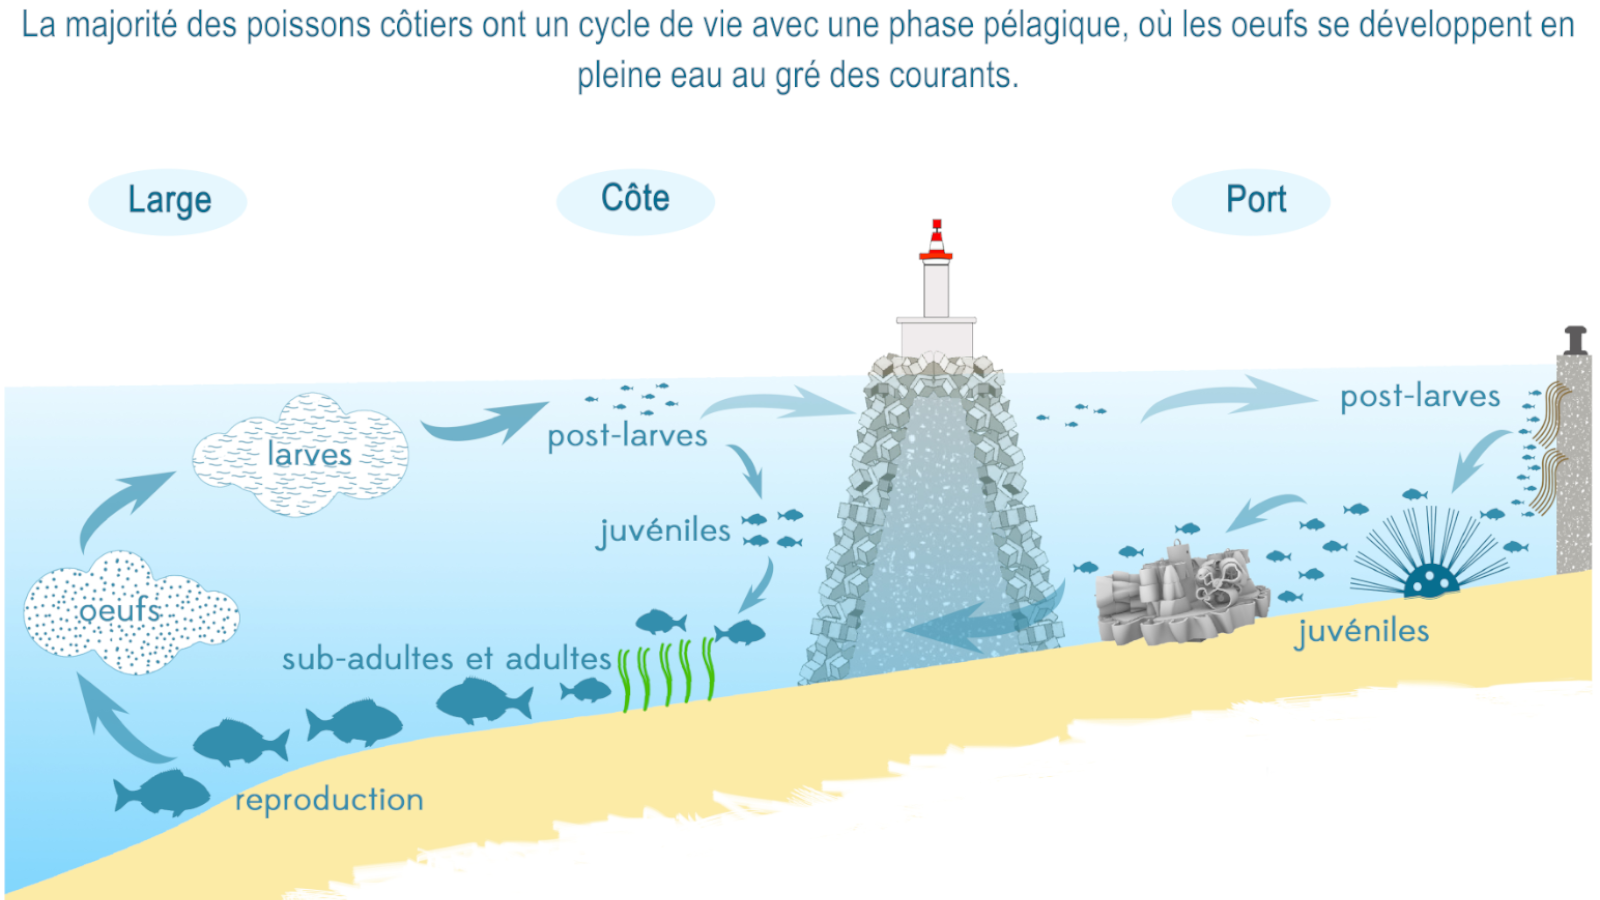 Schéma type d'un cycle de vie de poisson côtier (réalisation Mathieu Foulquié)